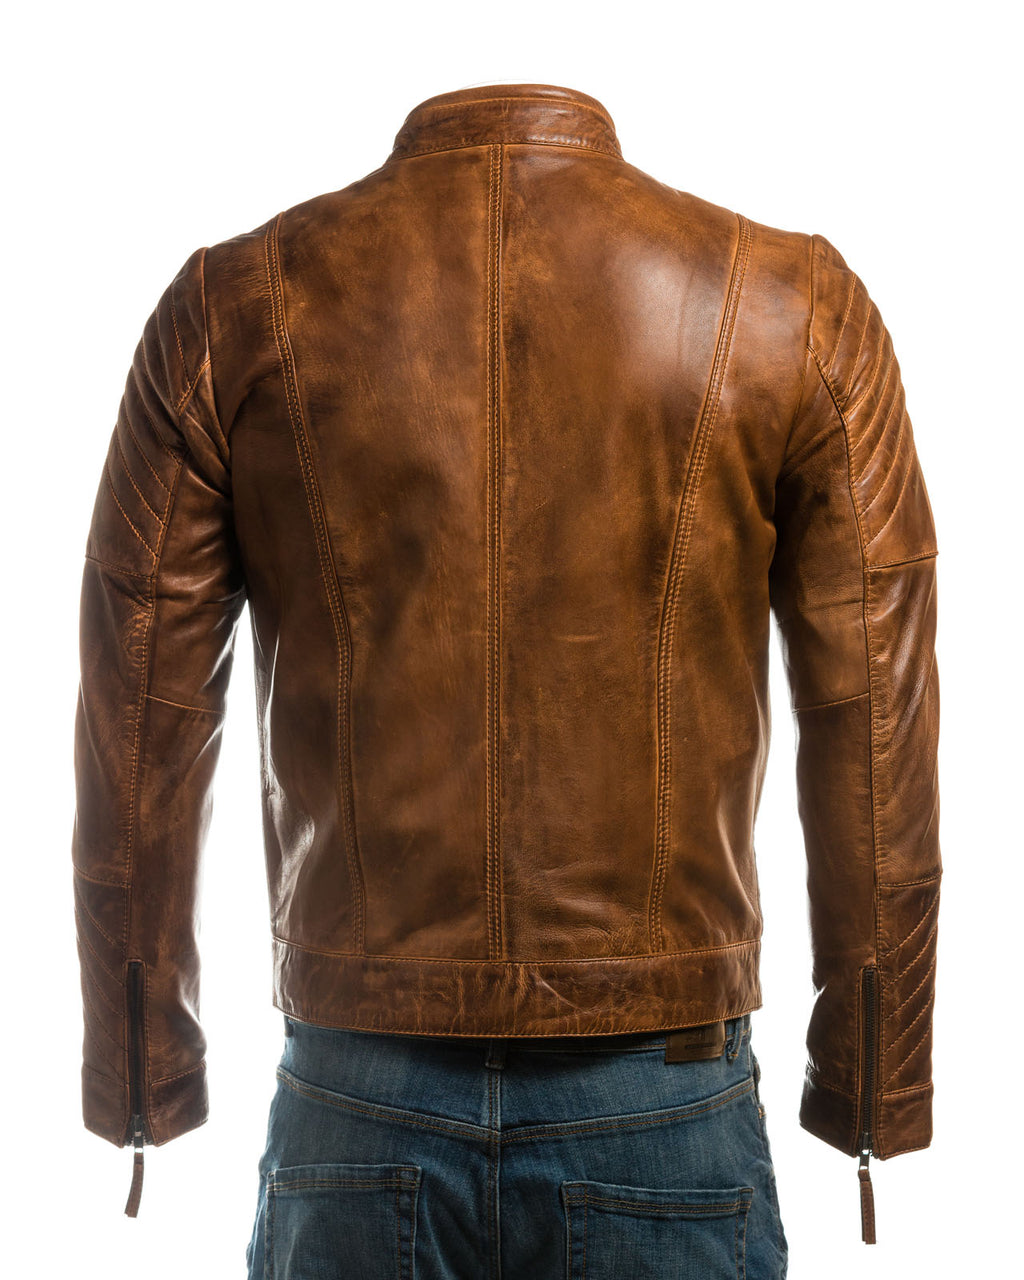 Men's Vintage Biker Style Leather Jacket With Shoulder Detail: Alessandro